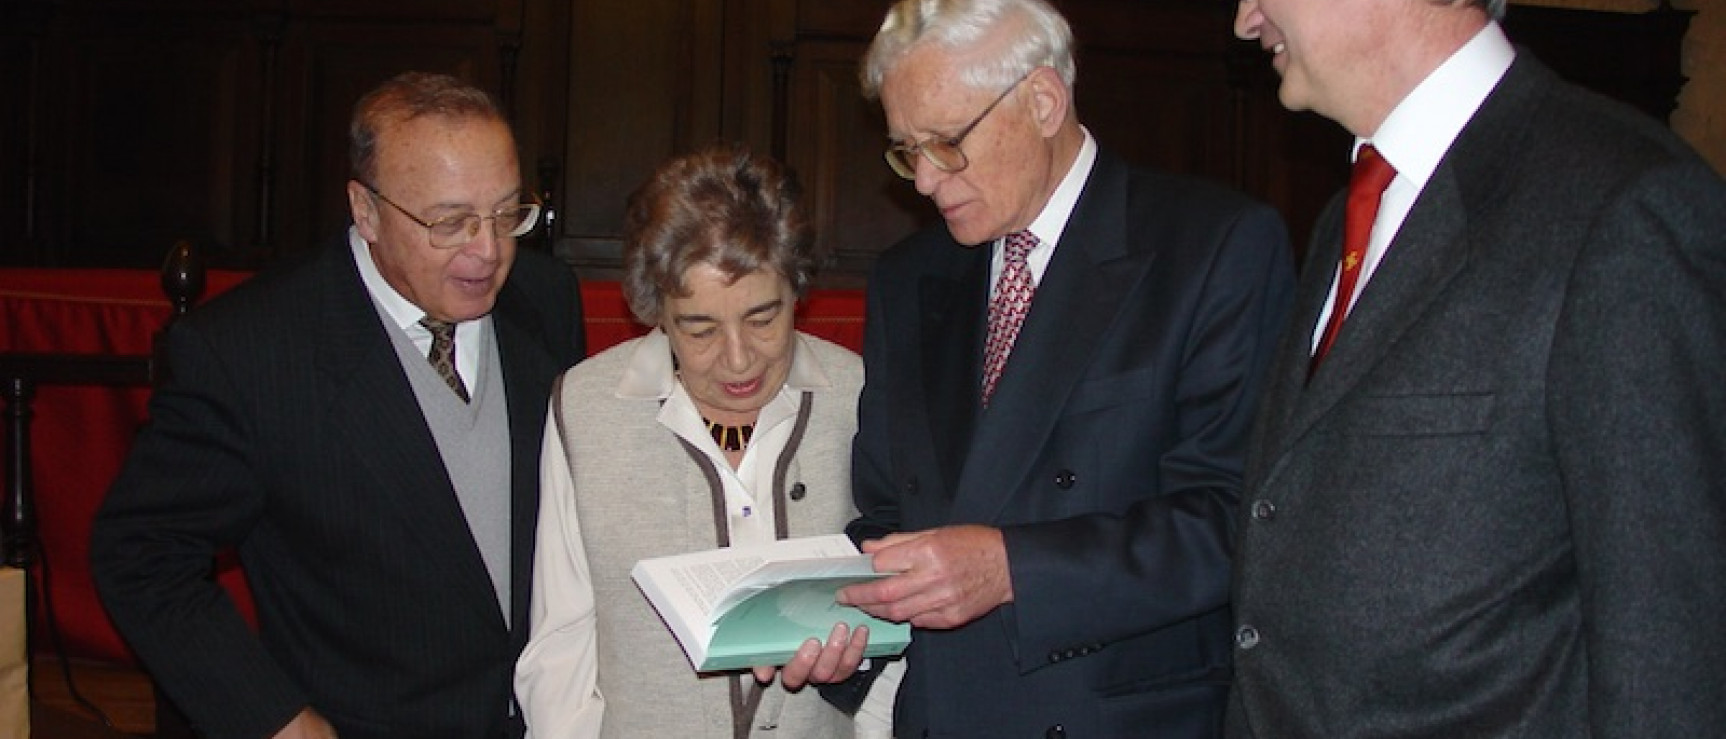 Gerold Hilty (centro), en un acto celebrado en la Universidad de Valladolid en 2005.